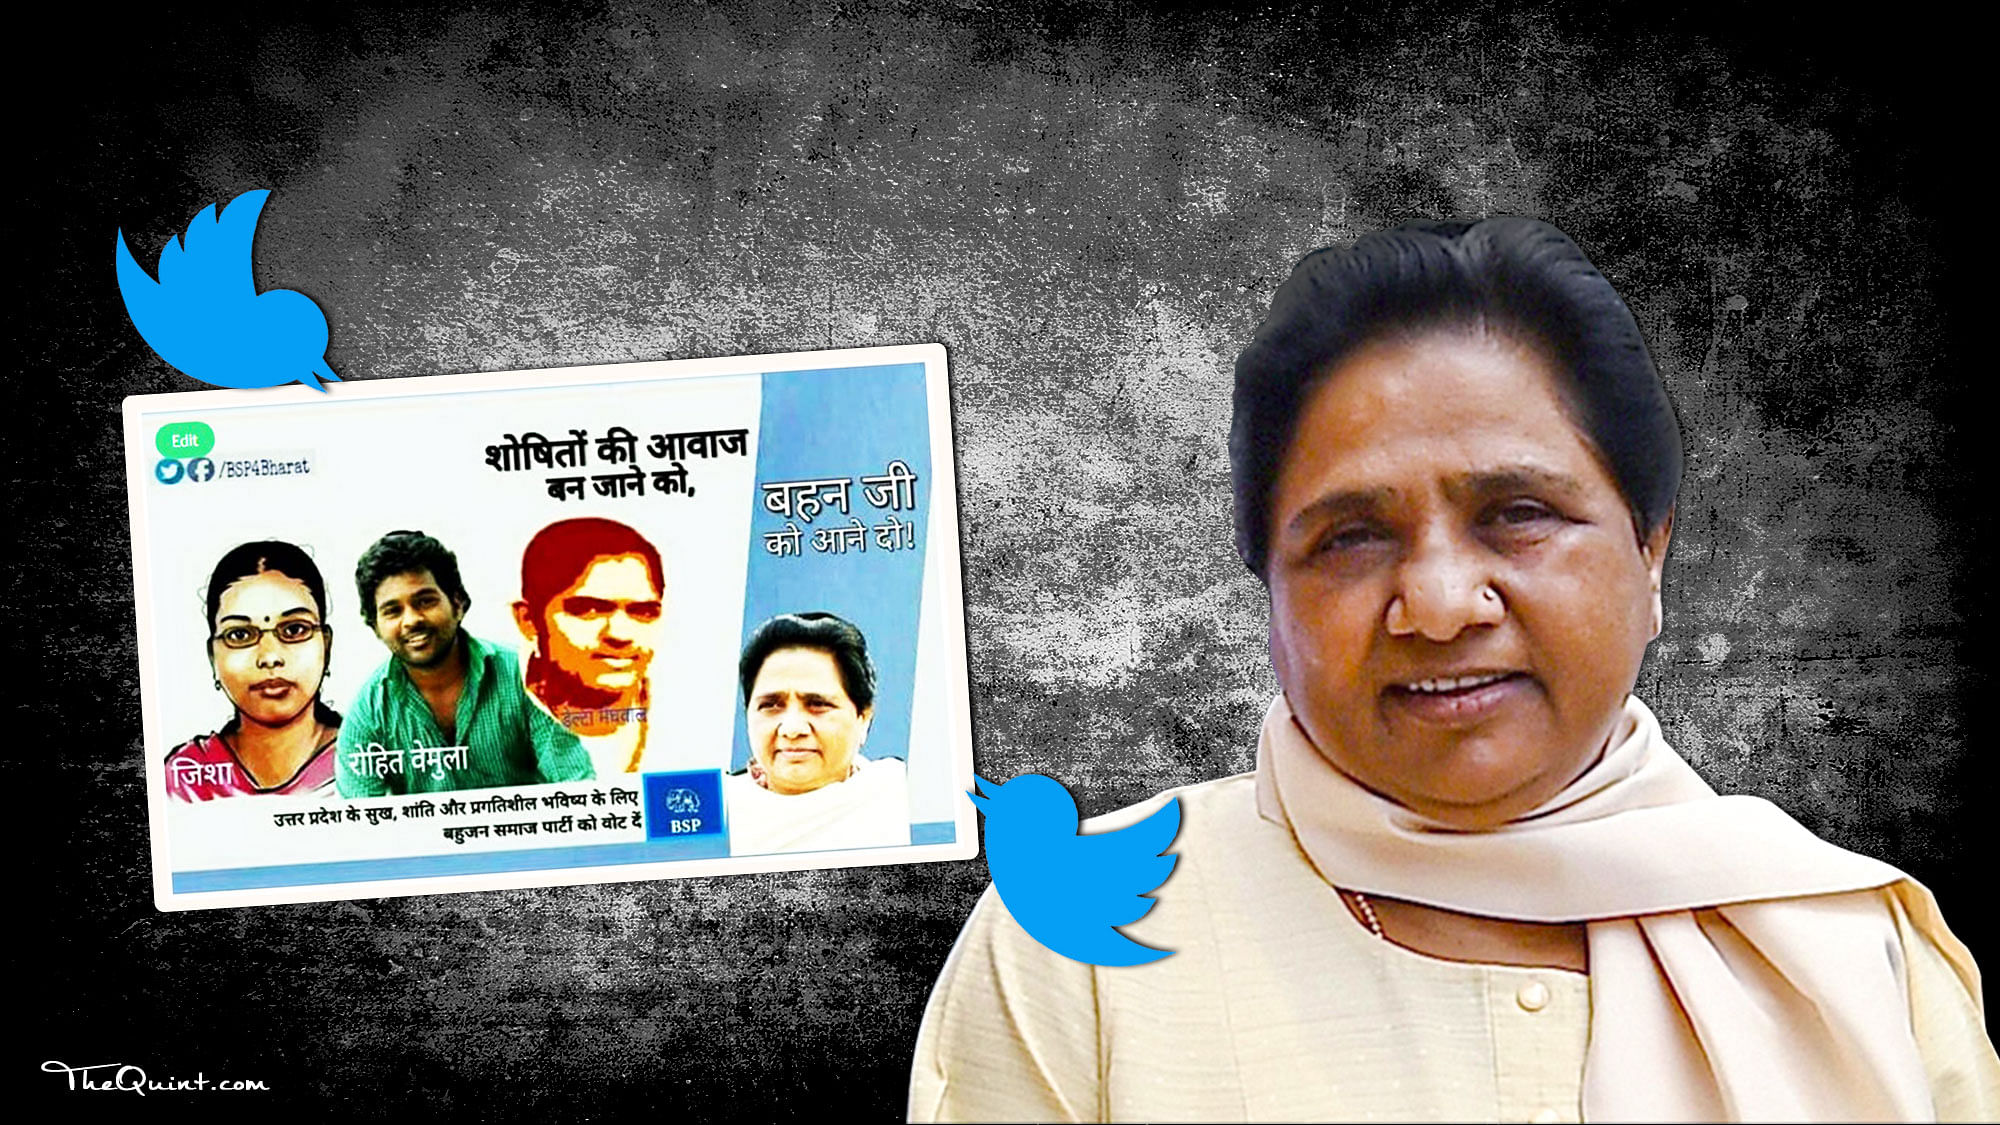 The social media campaign of BSP has begun. (Photo: <b>The Quint</b>)